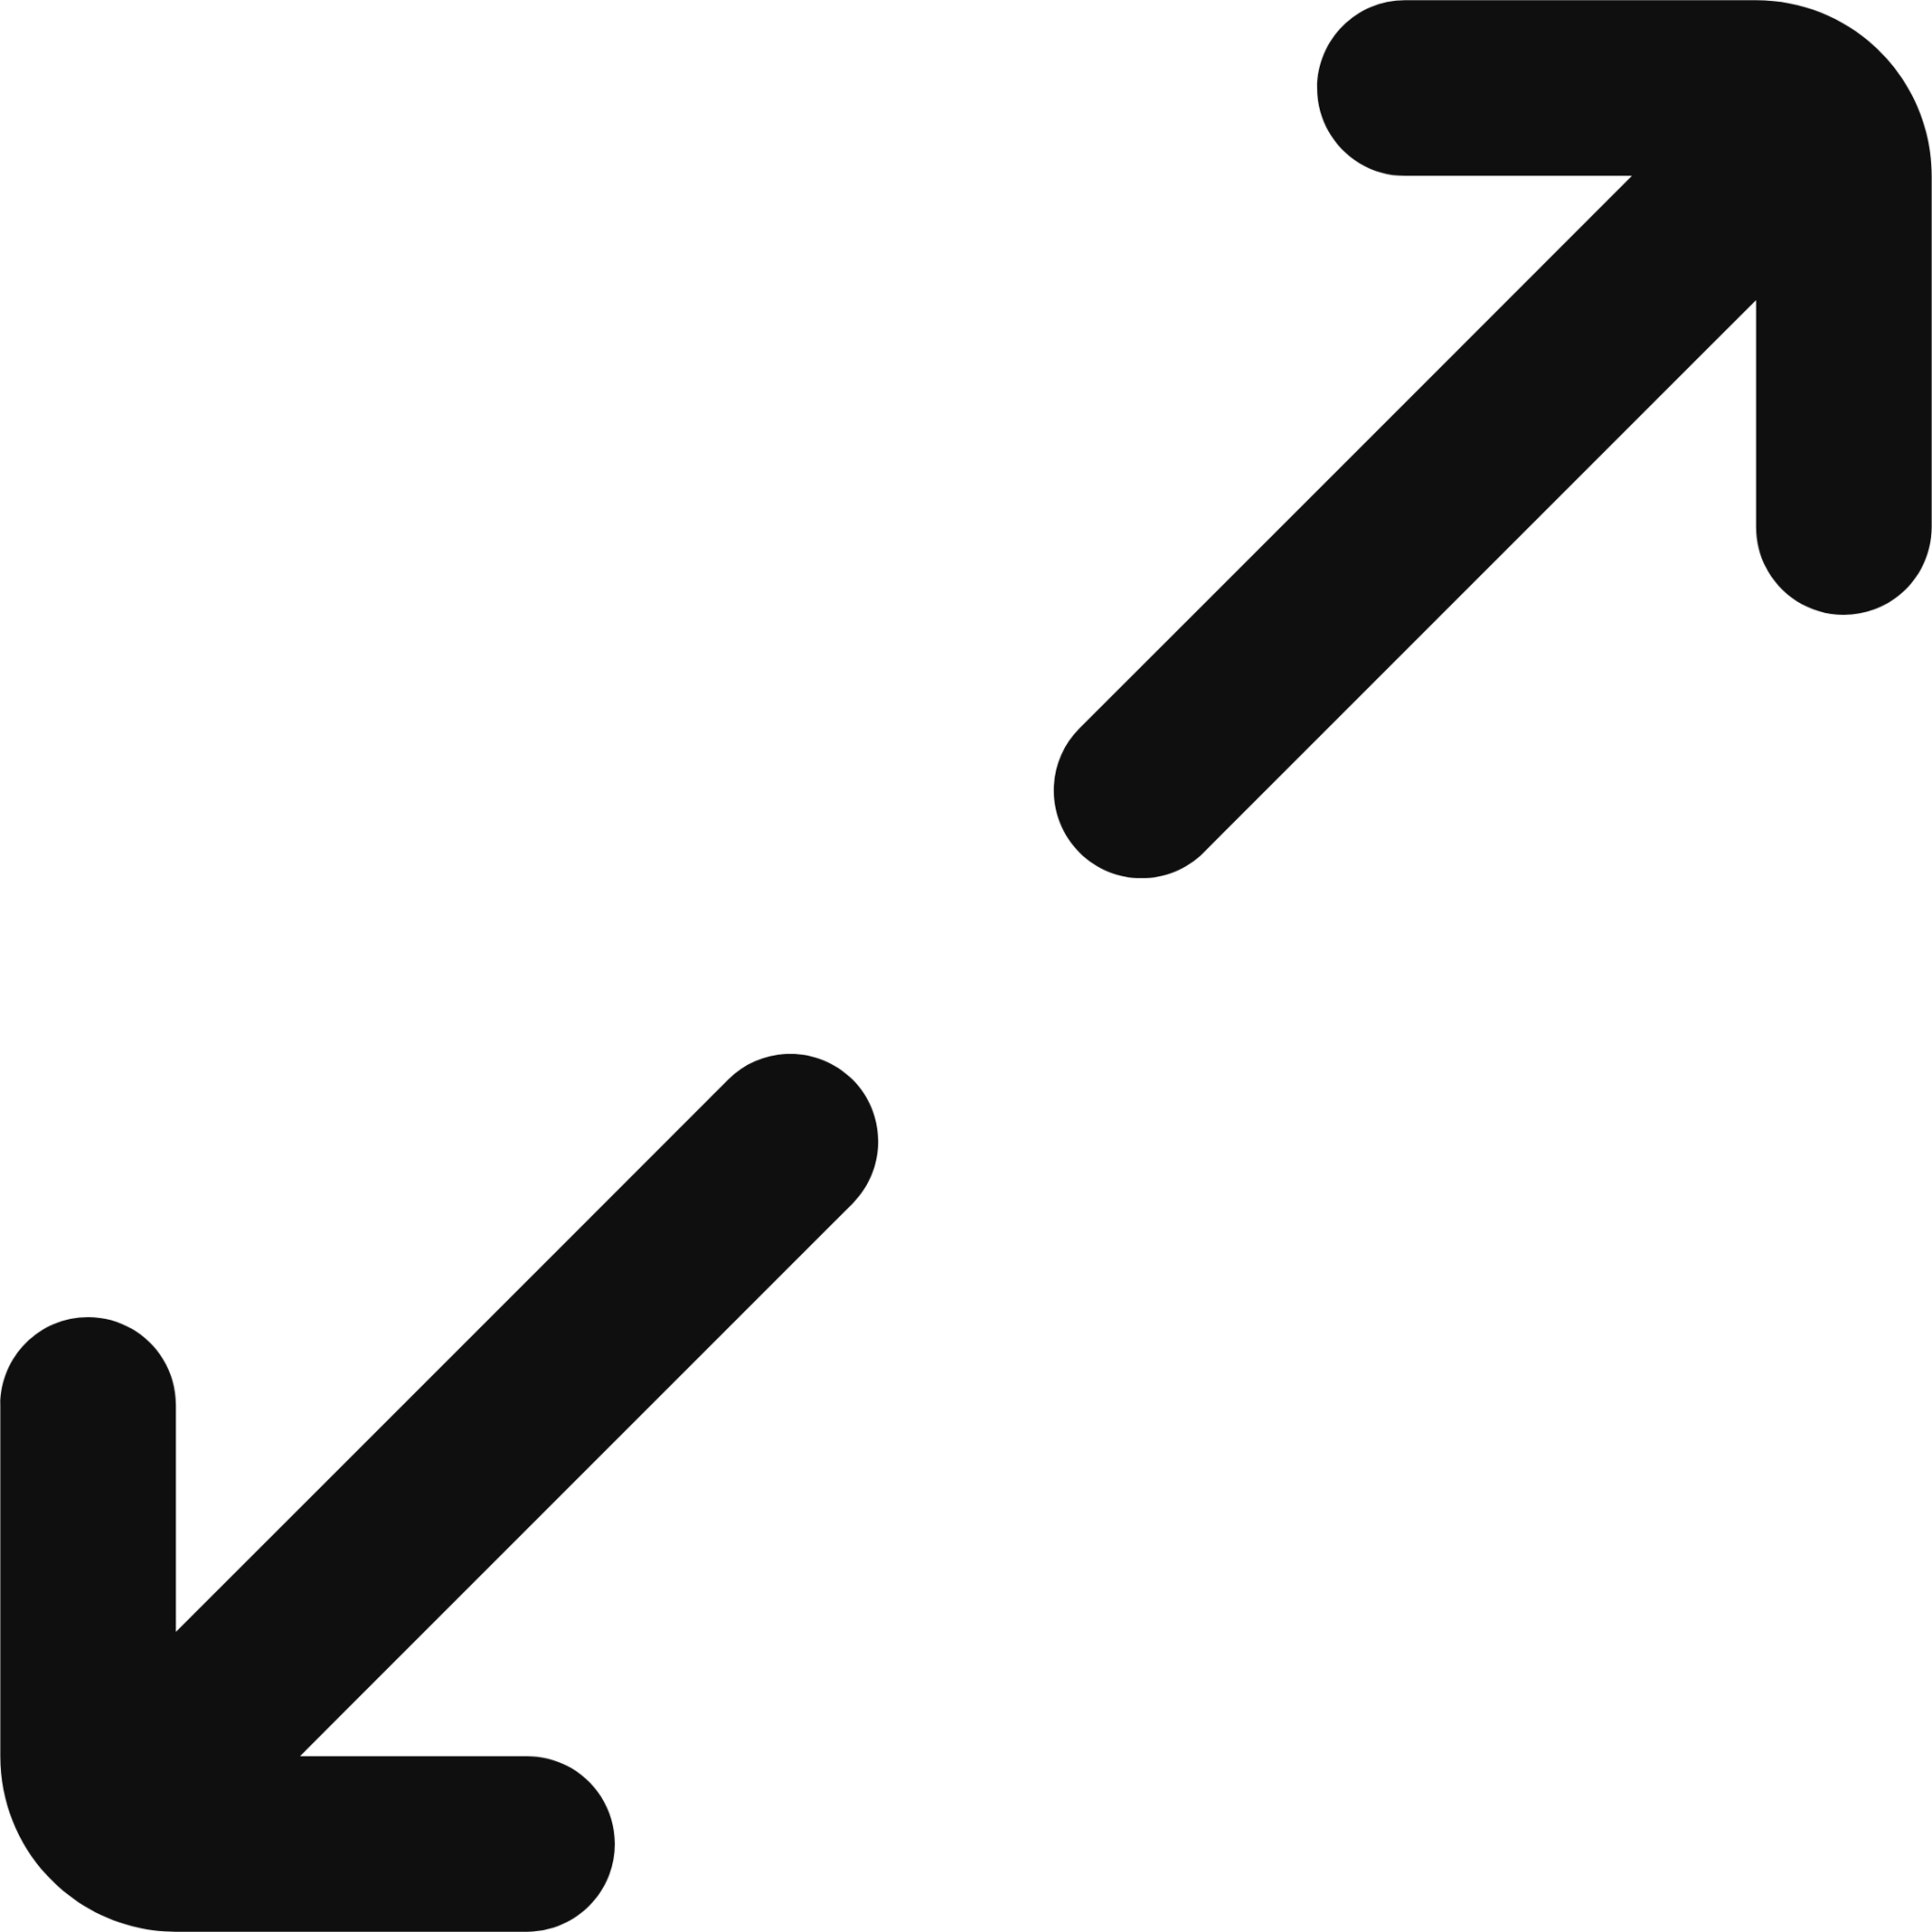 arrow diagonal double icon